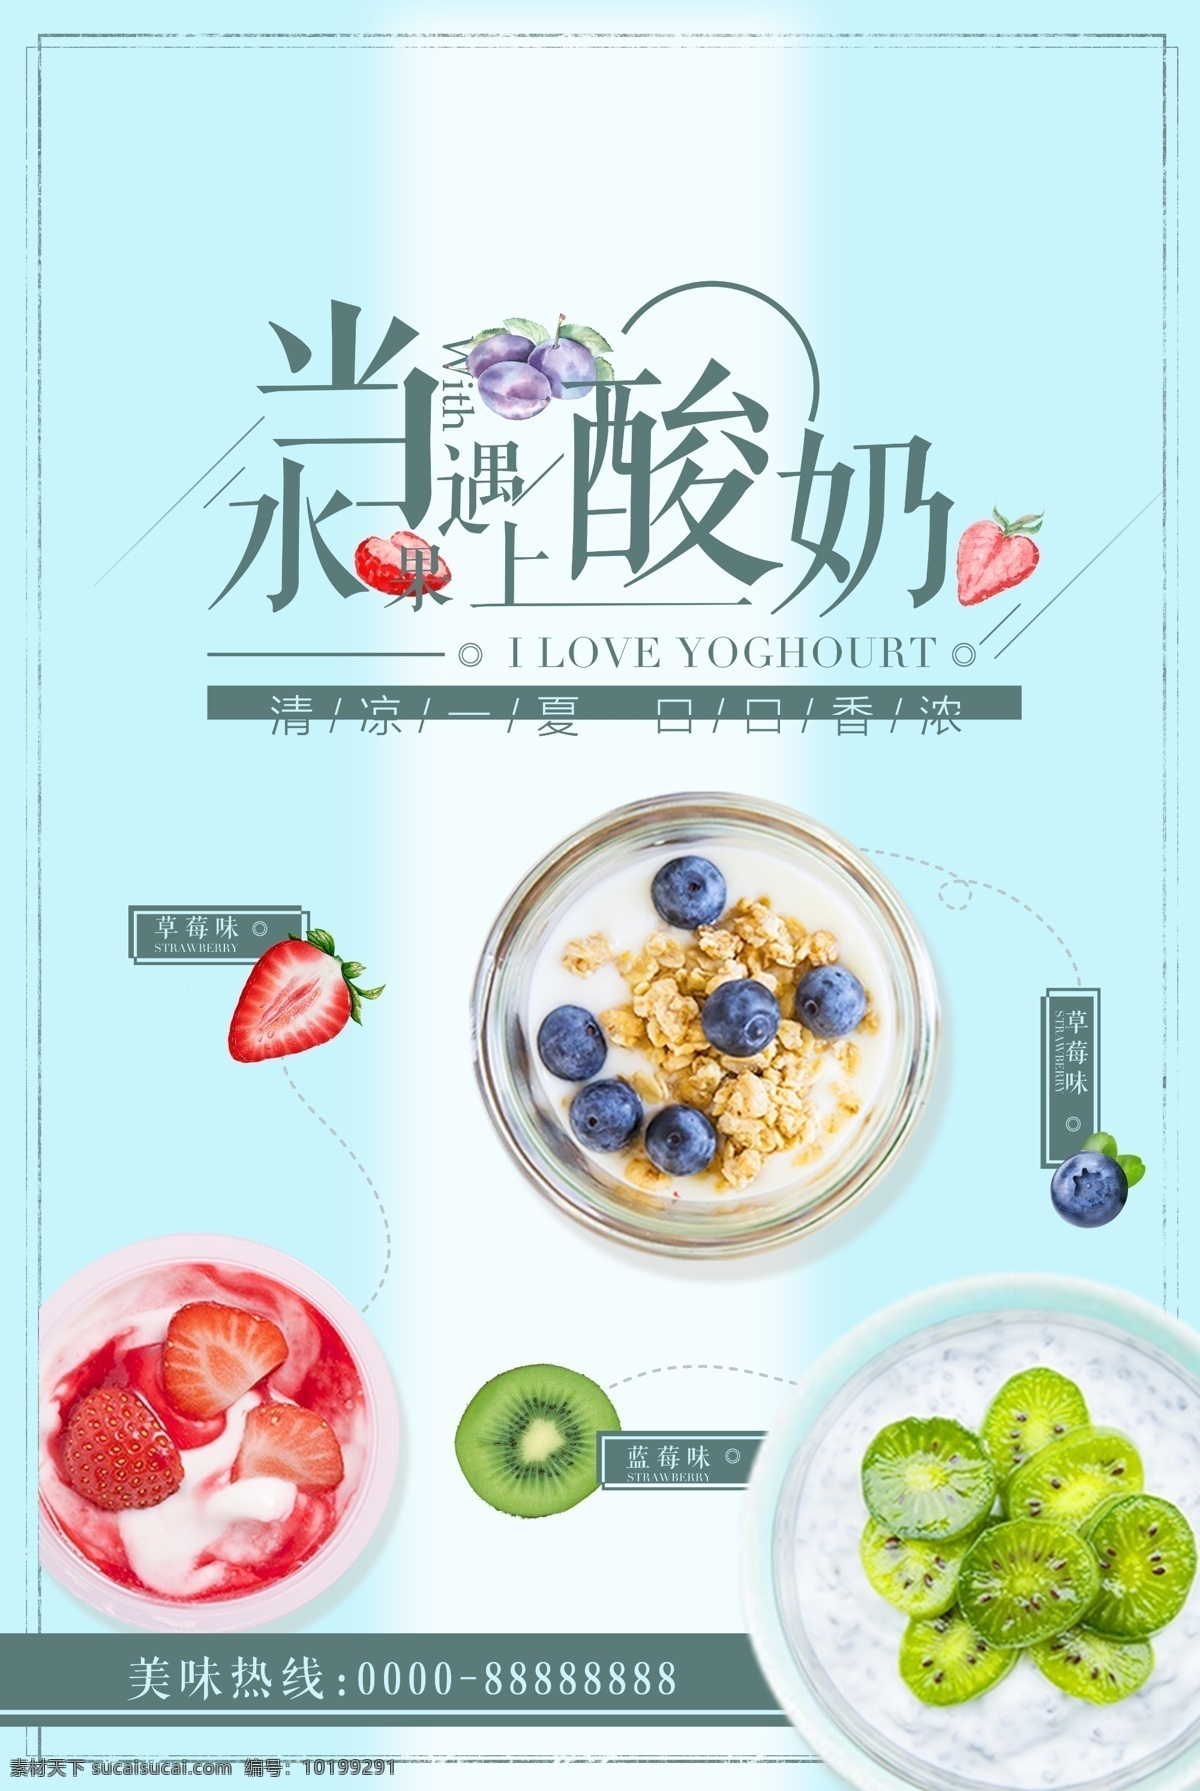 水果 遇上 酸奶 水果酸奶 水果遇上酸奶 水果酸奶海报 蓝莓酸奶 草莓酸奶 海报